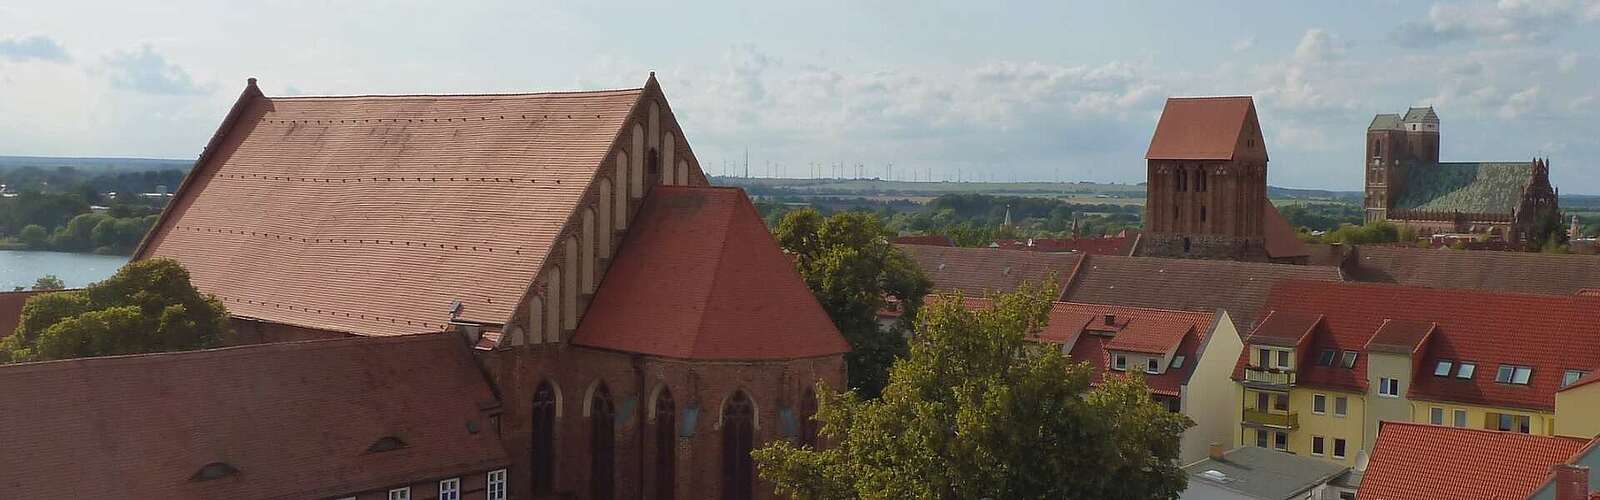 Blick auf das ehemalige Dominikanerkloster Prenzlau,
        
    

        Foto: TMB-Fotoarchiv/Matthias Schäfer